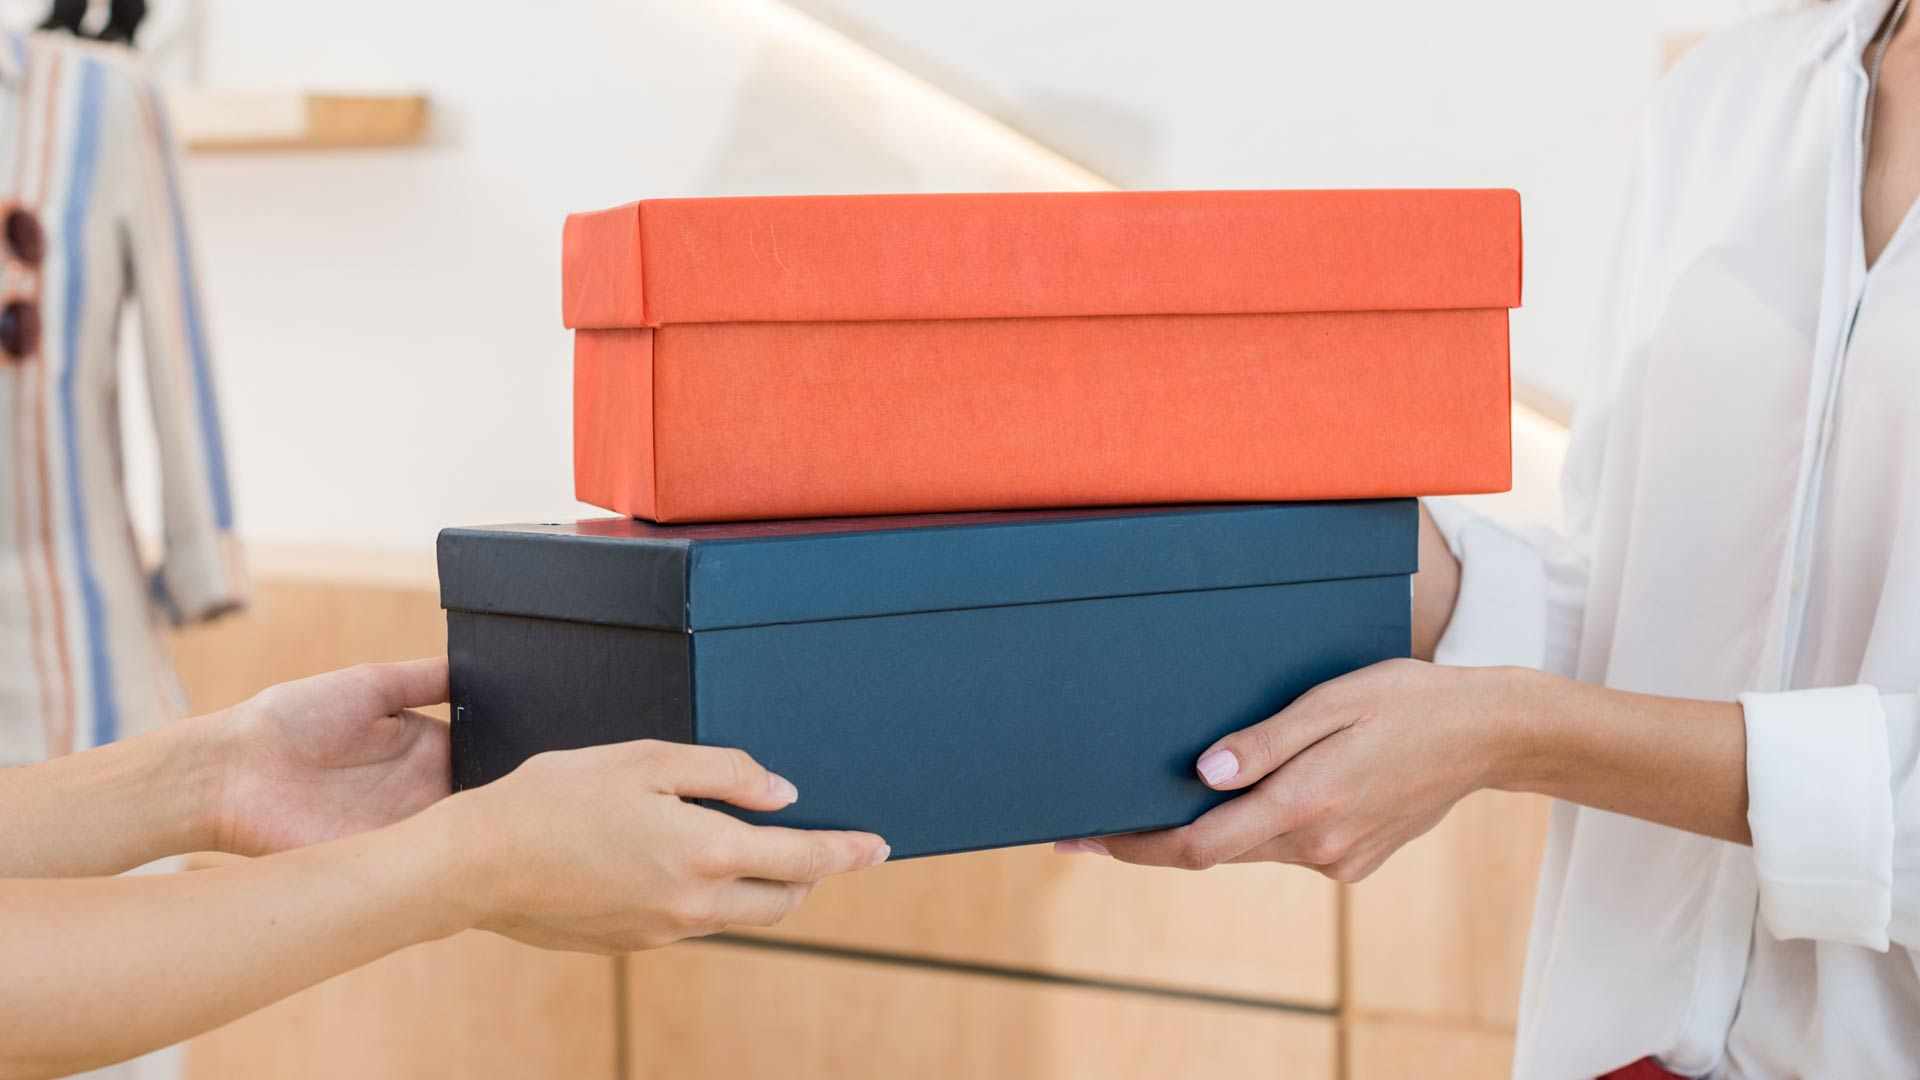 5 usos inesperados que puedes darle a tus cajas de zapatos